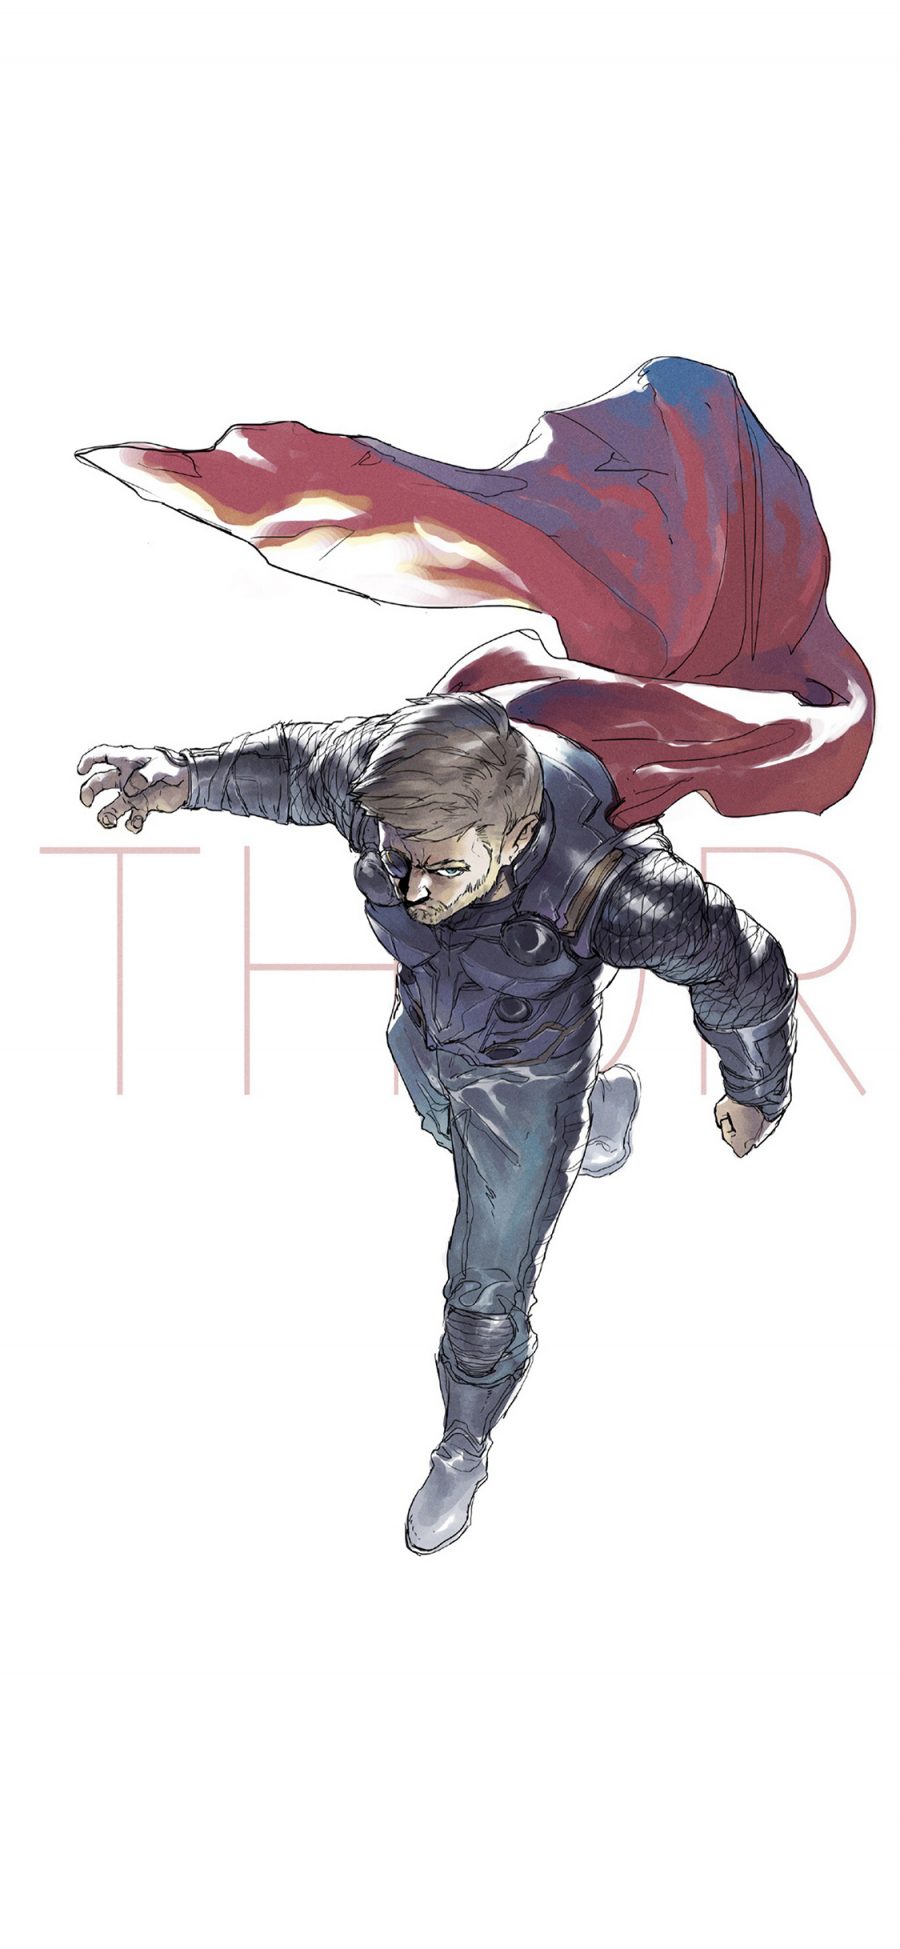 [2436×1125]雷神托尔 超级英雄 欧美 复仇者联盟 手绘 苹果手机动漫壁纸图片